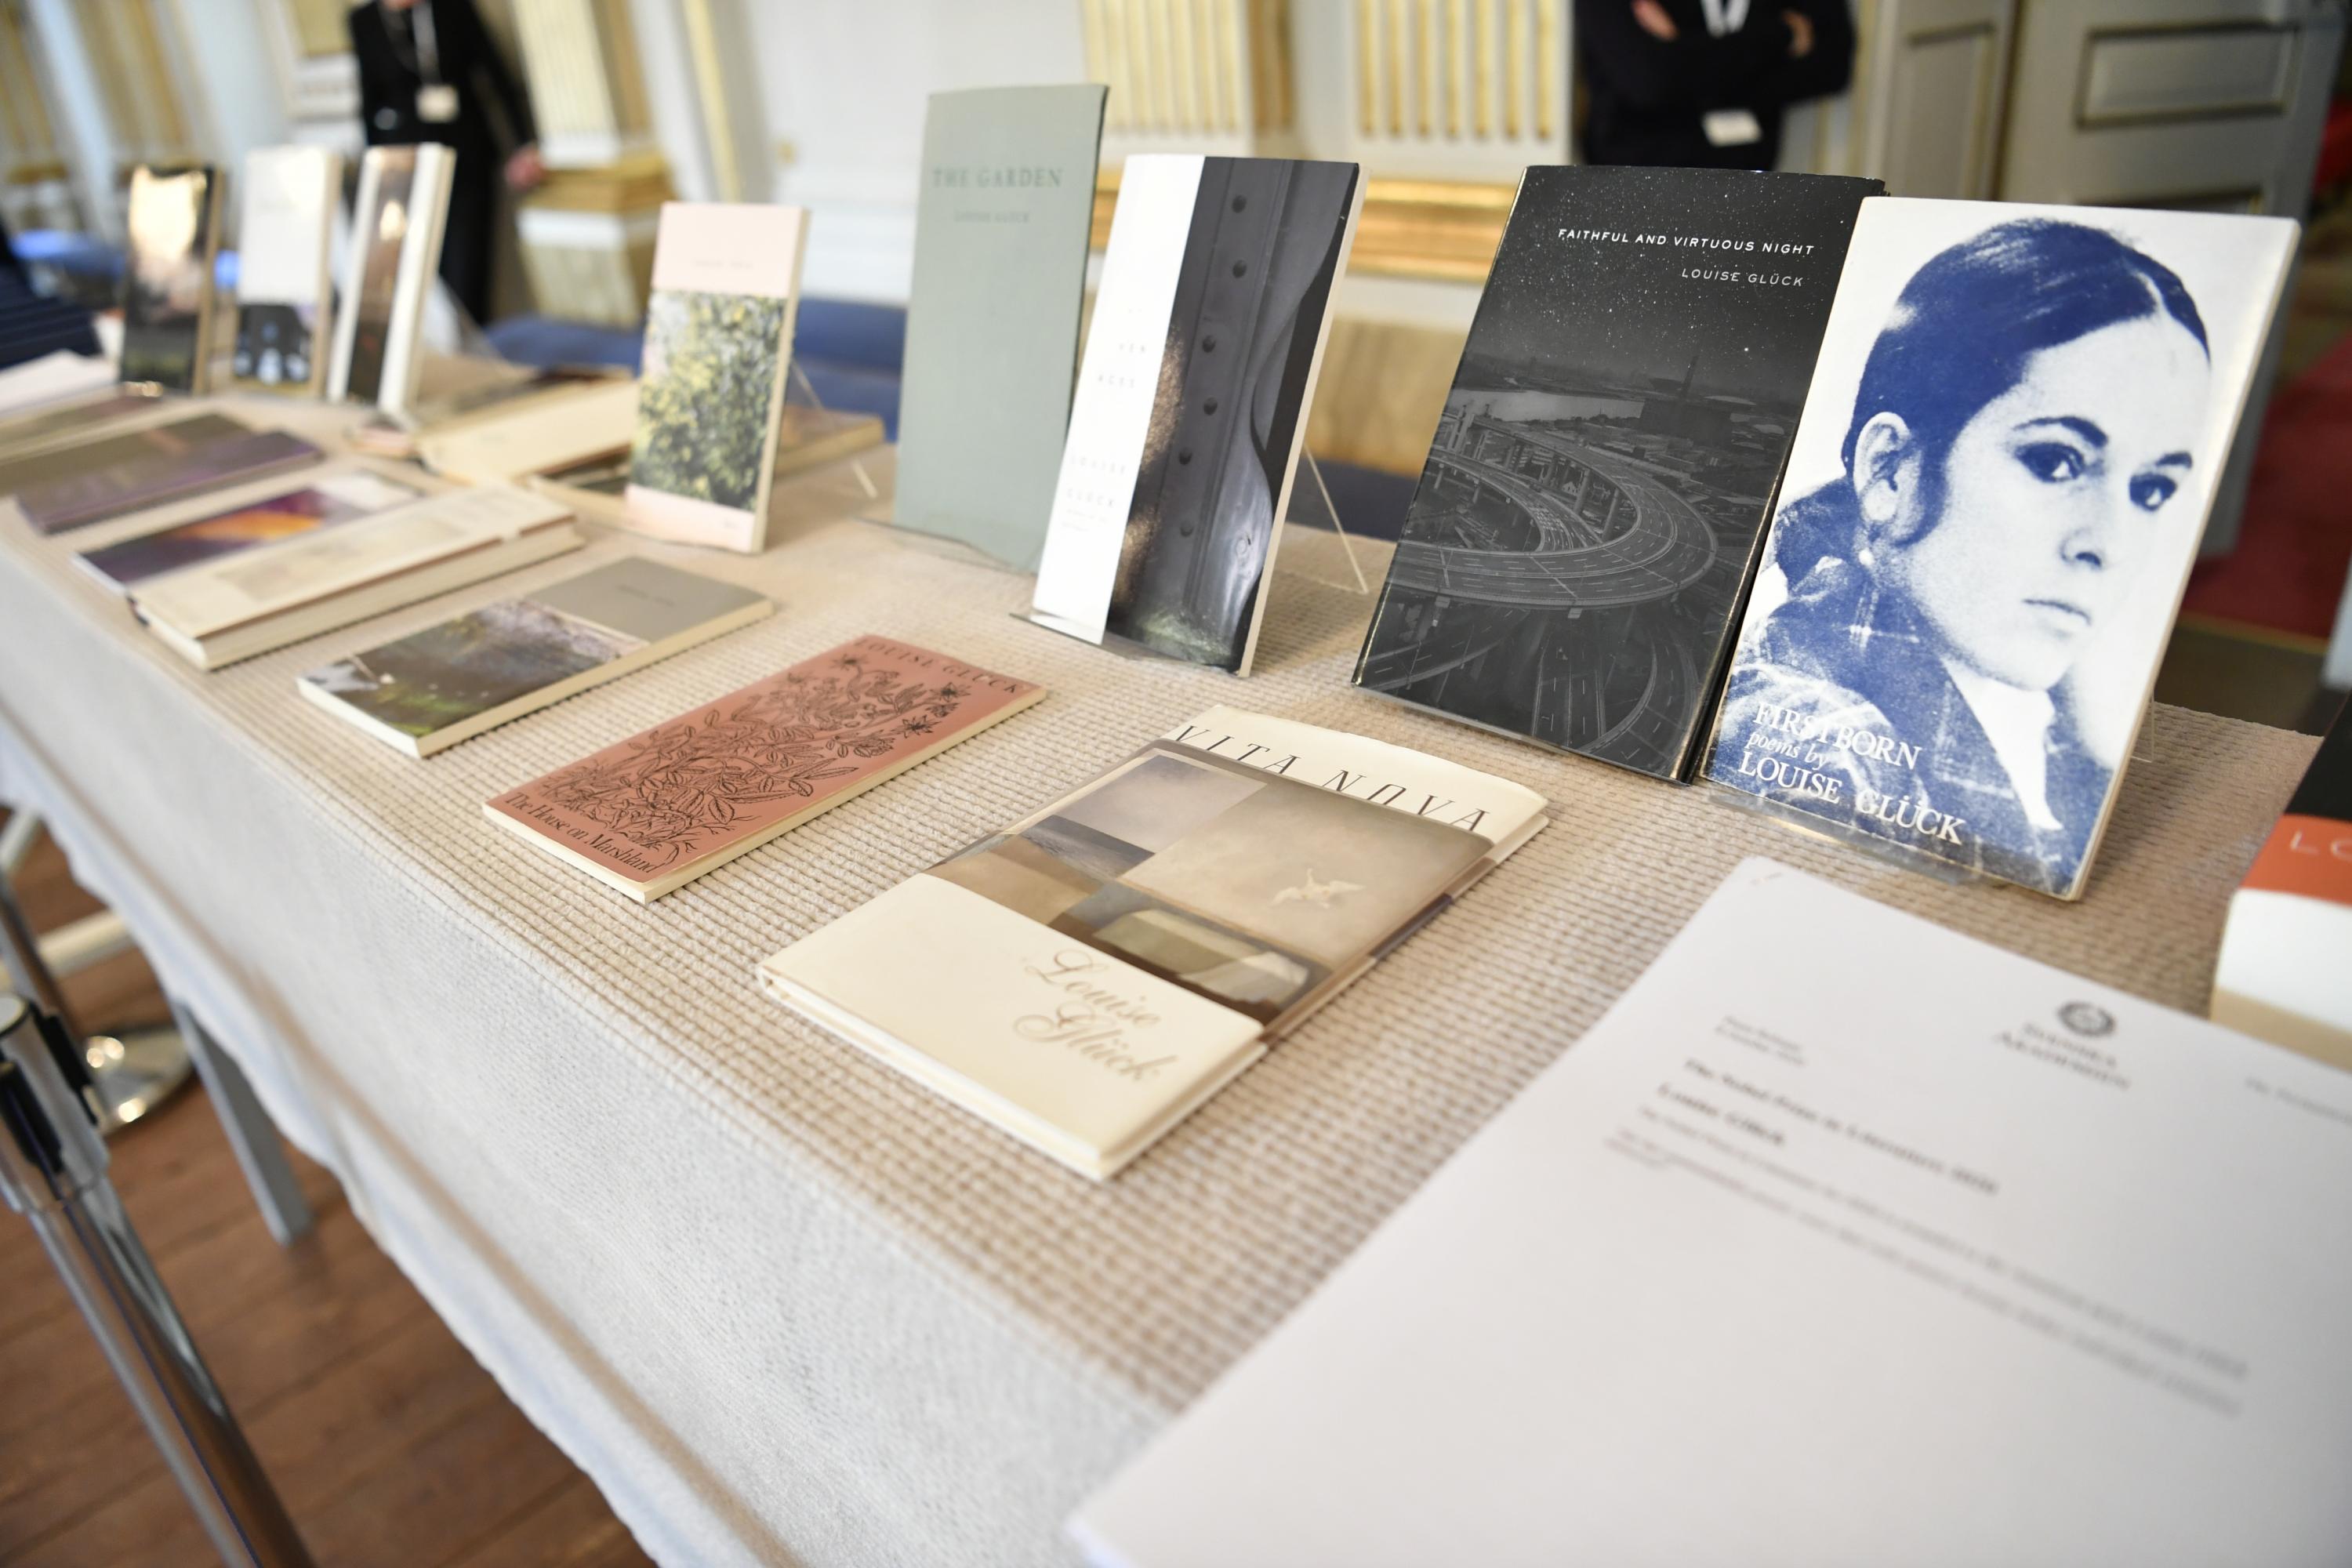 Los libros de Louise Glück fueron exhibidos durante el anuncio del Premio Nobel en la Academia Sueca en Estocolmo. Foto de Henrik Montgomery / TT News Agency / AFP